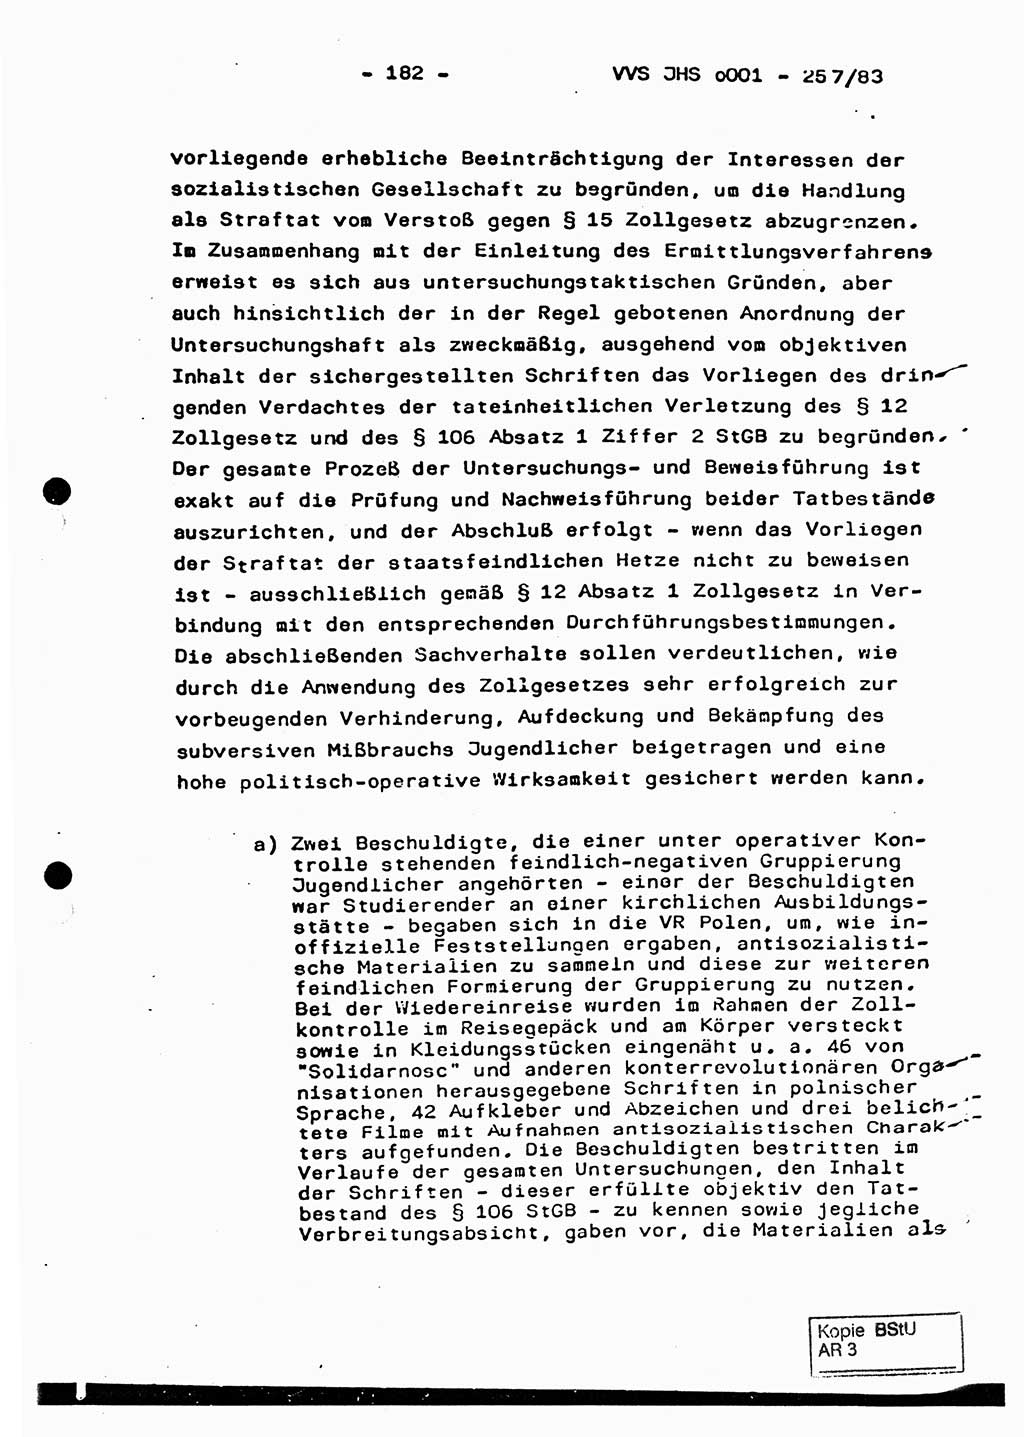 Dissertation, Oberst Helmut Lubas (BV Mdg.), Oberstleutnant Manfred Eschberger (HA IX), Oberleutnant Hans-Jürgen Ludwig (JHS), Ministerium für Staatssicherheit (MfS) [Deutsche Demokratische Republik (DDR)], Juristische Hochschule (JHS), Vertrauliche Verschlußsache (VVS) o001-257/83, Potsdam 1983, Seite 182 (Diss. MfS DDR JHS VVS o001-257/83 1983, S. 182)